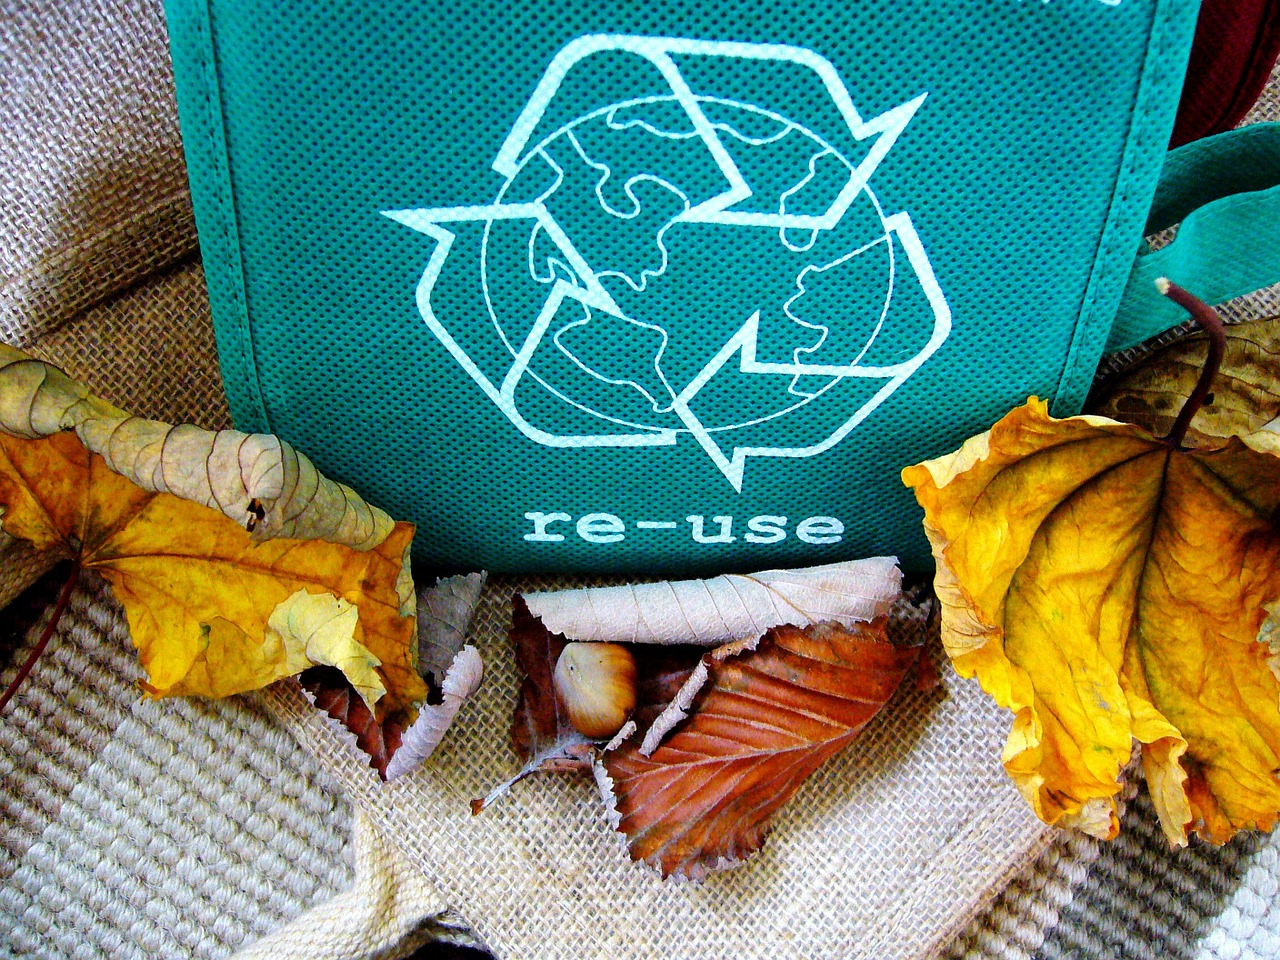 Działania mające usprawnić recykling odpadów